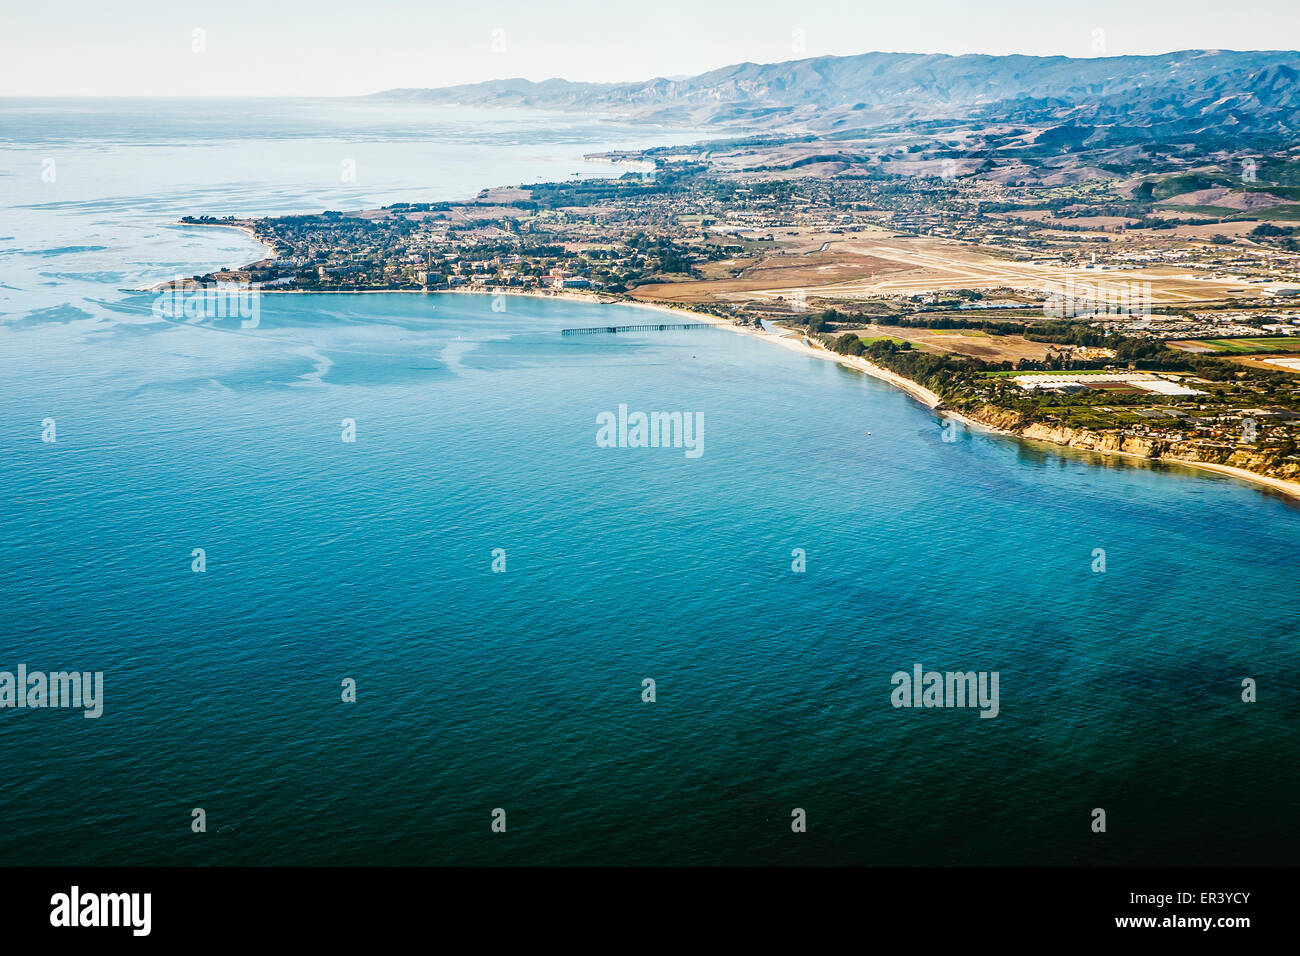 Une vue aérienne de l'Université de Californie à Santa Barbara campus et parties de Goleta et Isla Vista, en Californie. Banque D'Images